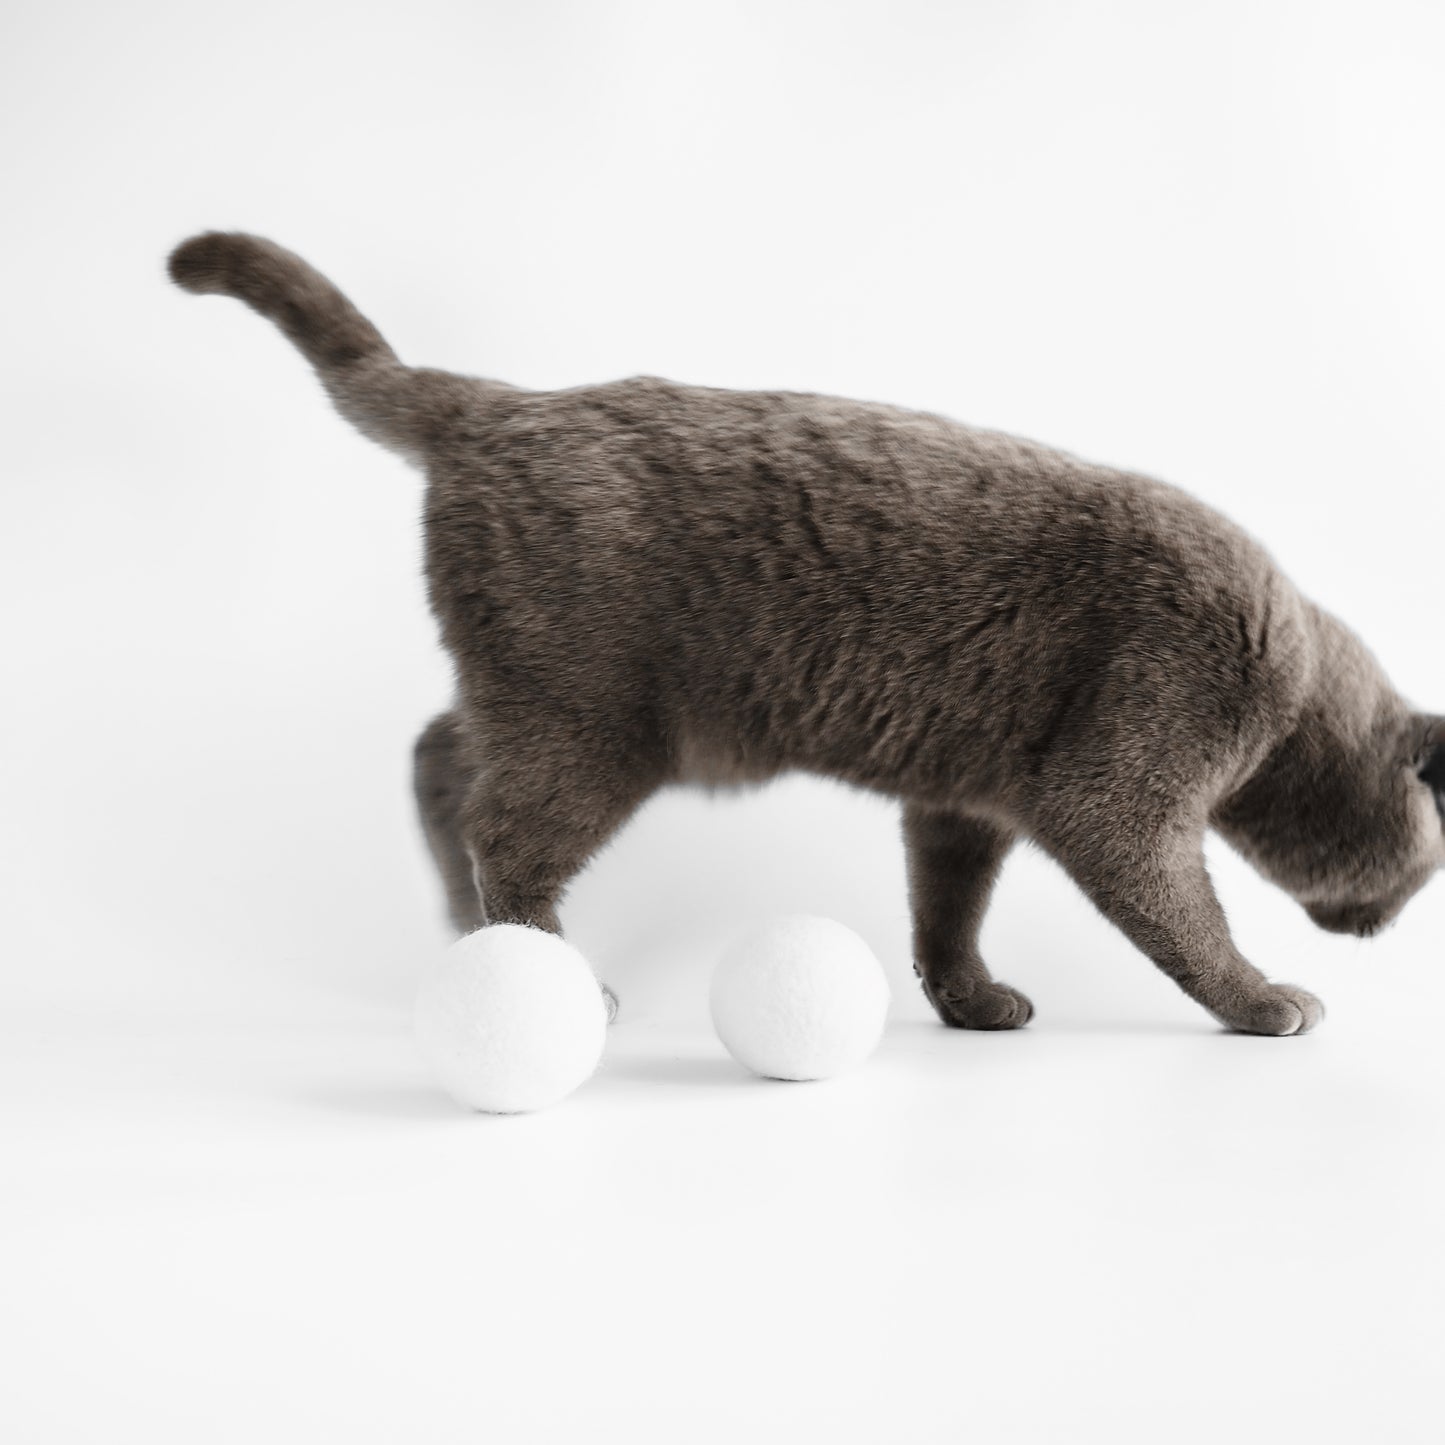 Filzbälle Katzenspielzeug natürliches Spielzeug für Katzen.